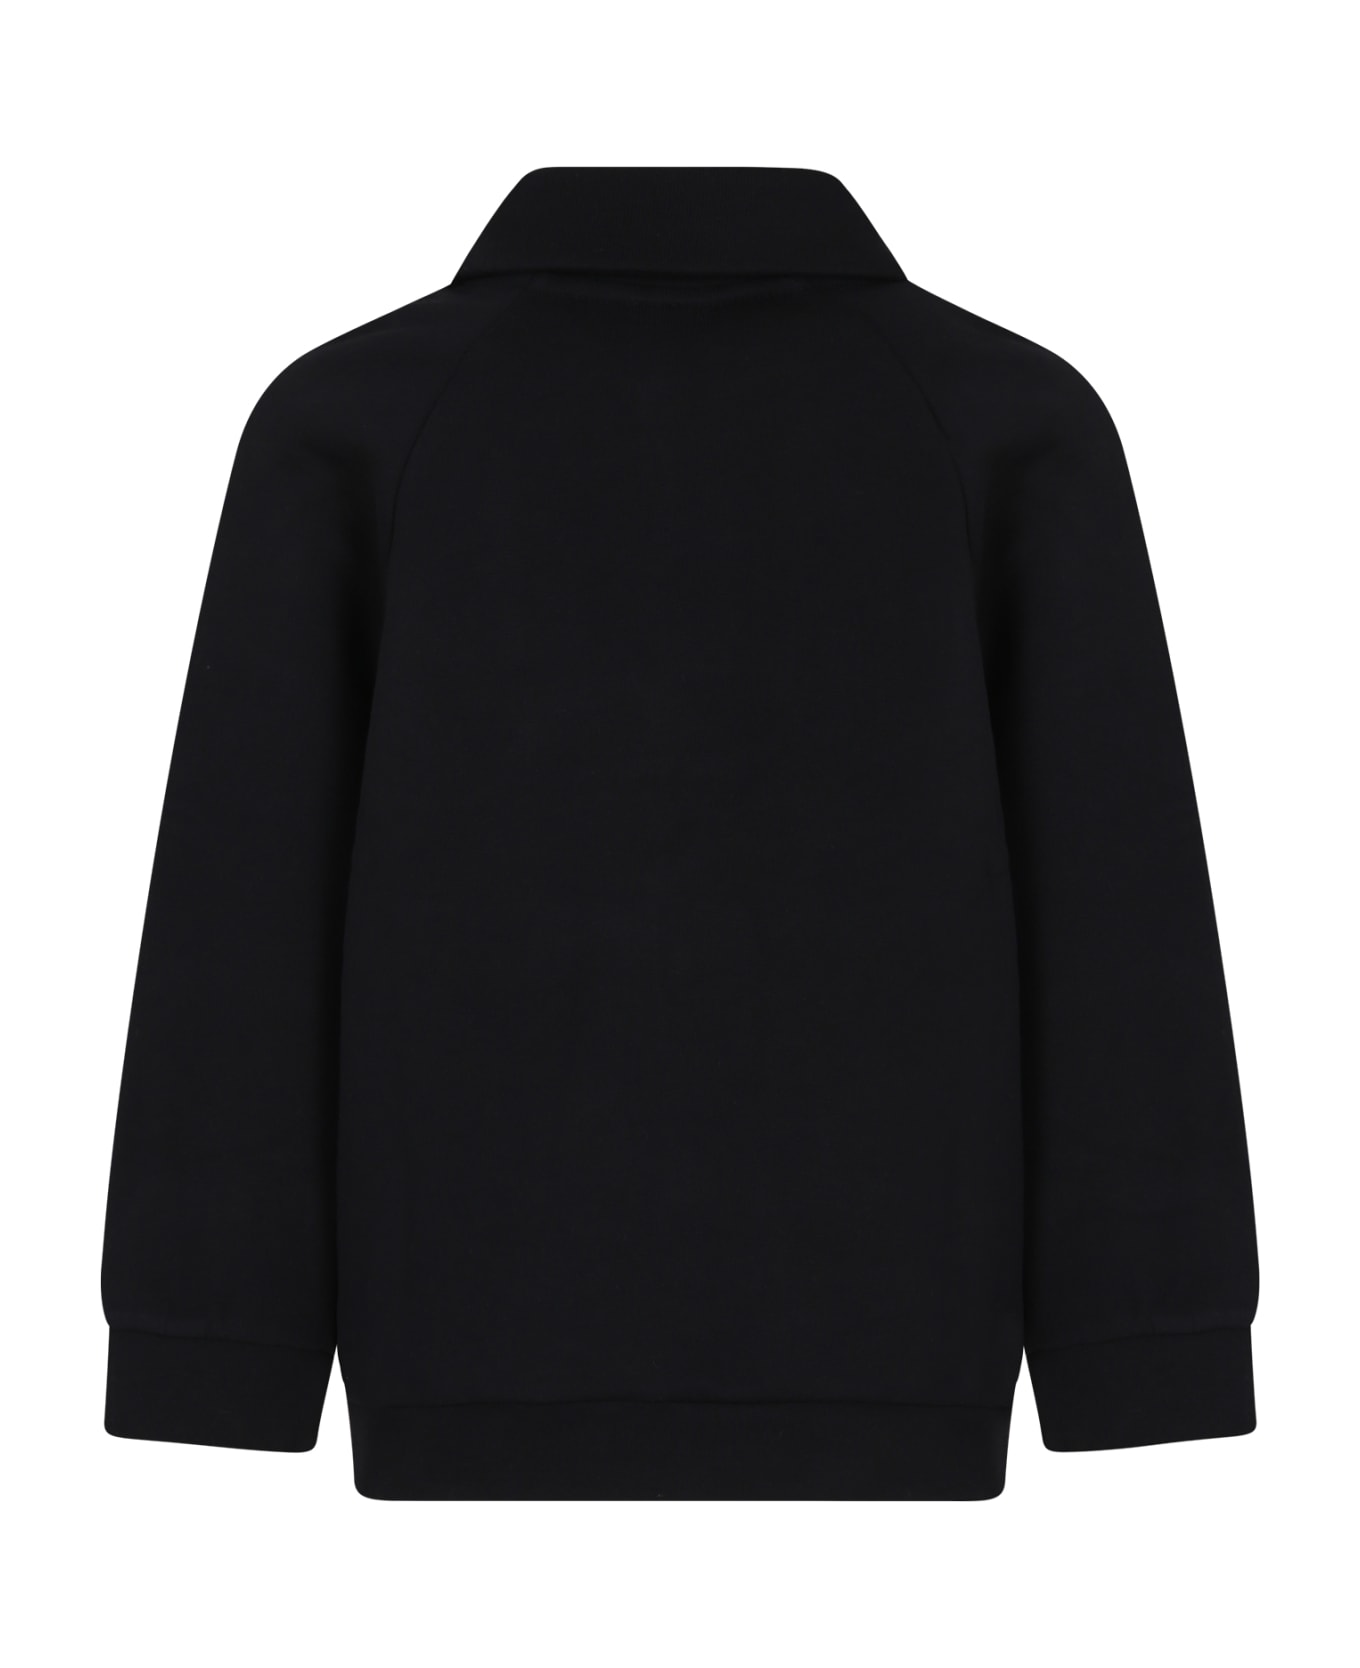 Fendi Black Sweatshirt For Boy With Fendi Logo - Black